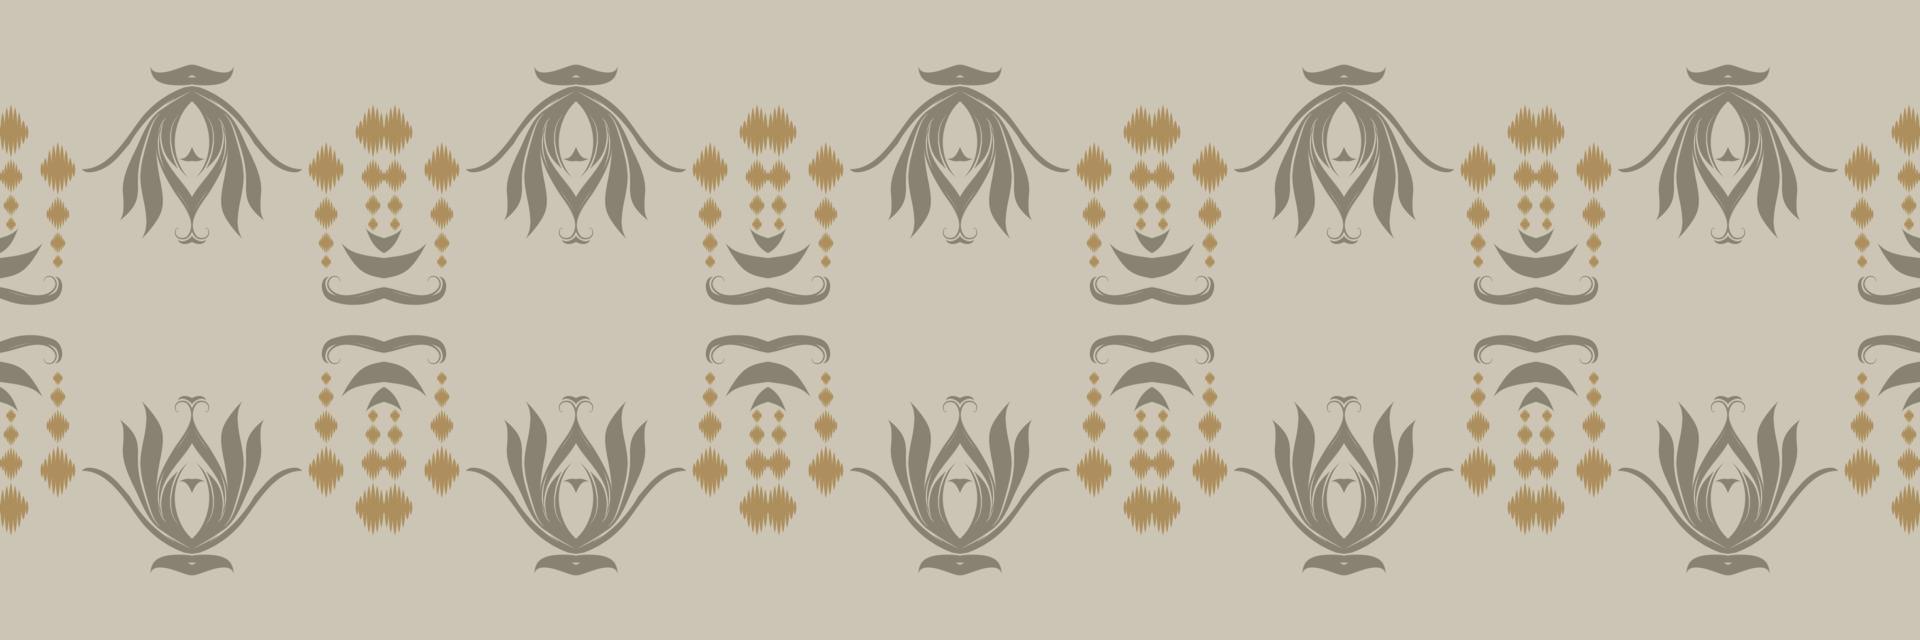 motiv ikat damast- batik textil- sömlös mönster digital vektor design för skriva ut saree kurti borneo tyg gräns borsta symboler färgrutor bomull